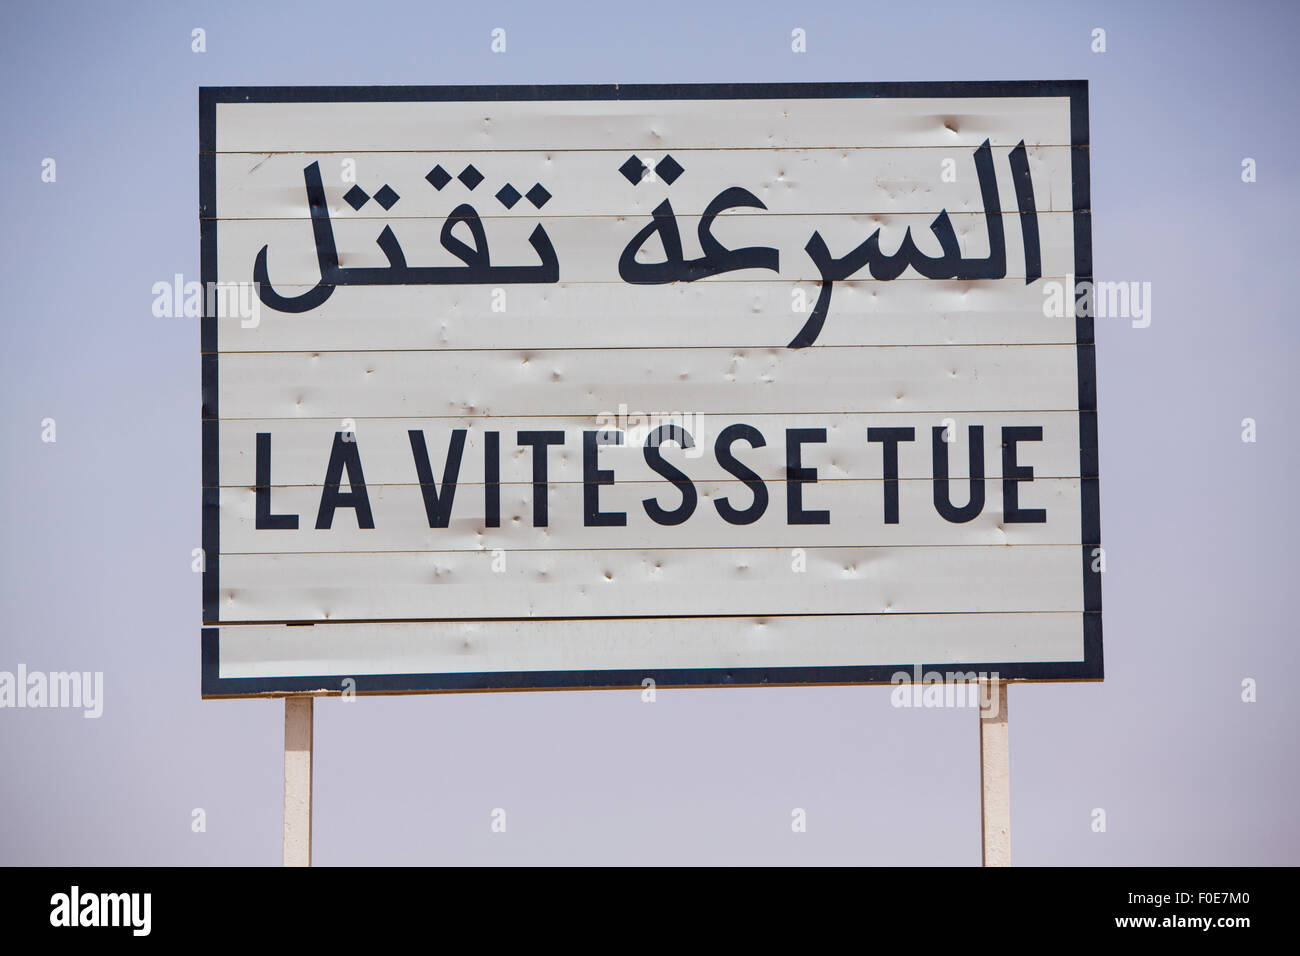 La vitesse tue Traffic signal routier écrit en français et en arabe sur fond bleu Banque D'Images